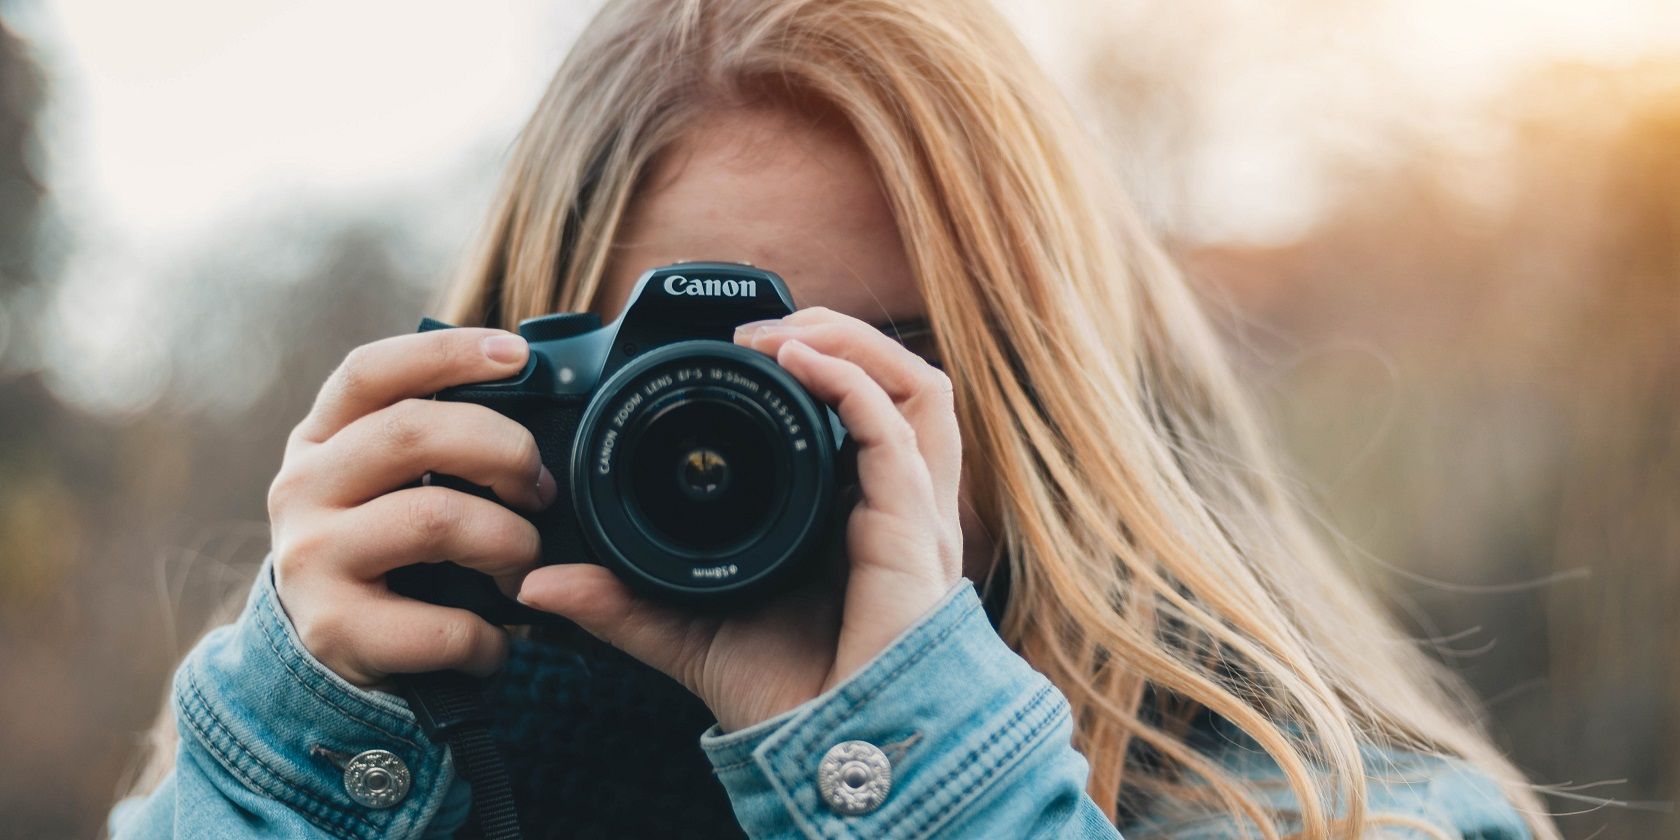 foto de uma mulher fotografando com uma câmera canon